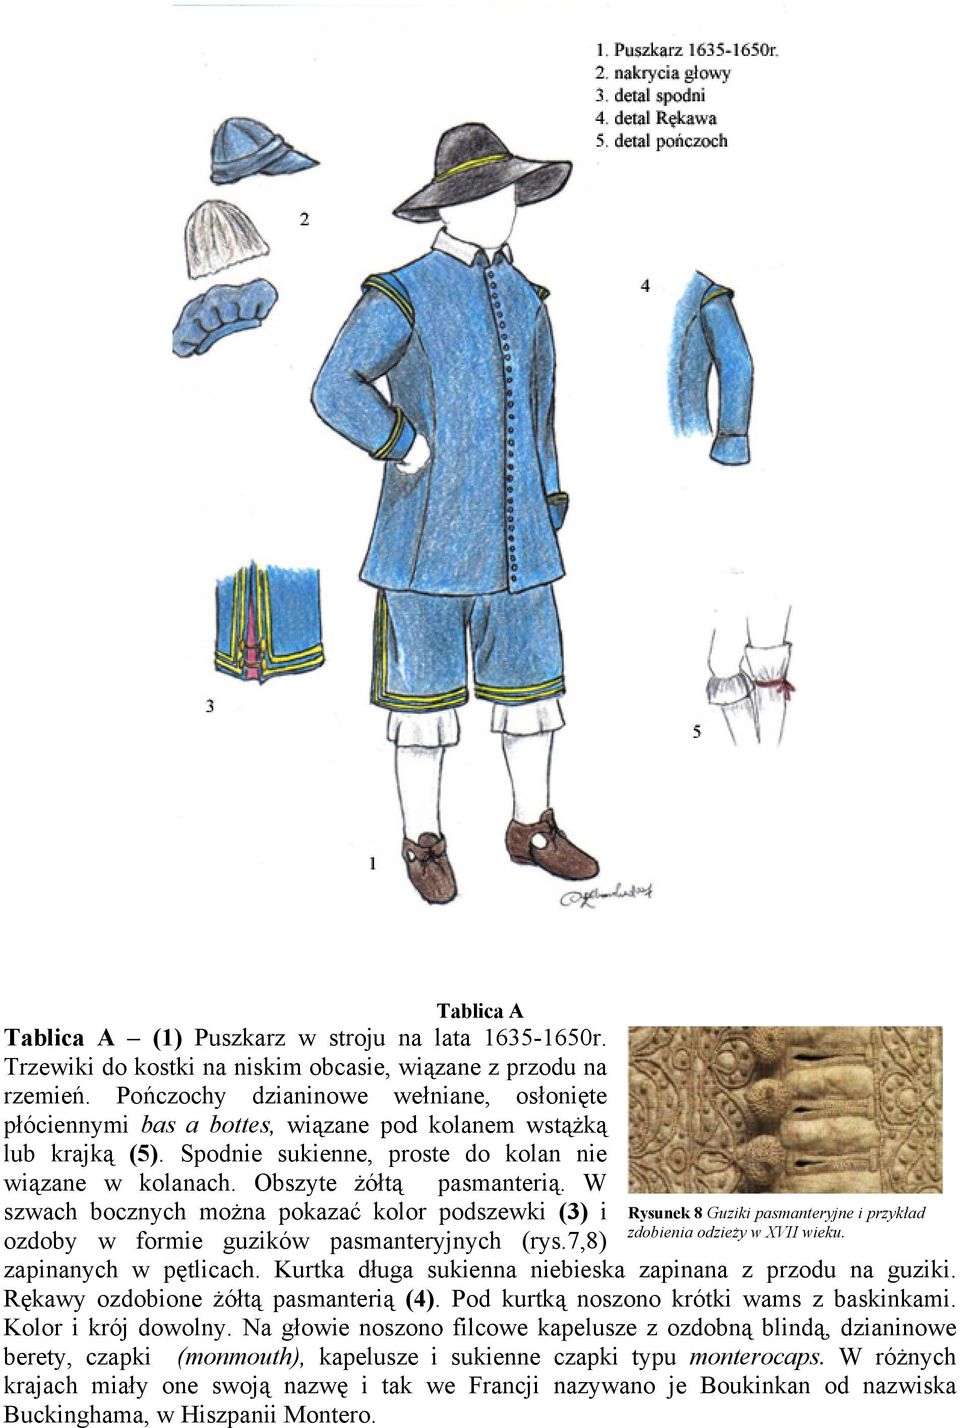 W szwach bocznych można pokazać kolor podszewki (3) i ozdoby w formie guzików pasmanteryjnych (rys.7,8) Rysunek 8 Guziki pasmanteryjne i przykład zdobienia odzieży w XVII wieku.